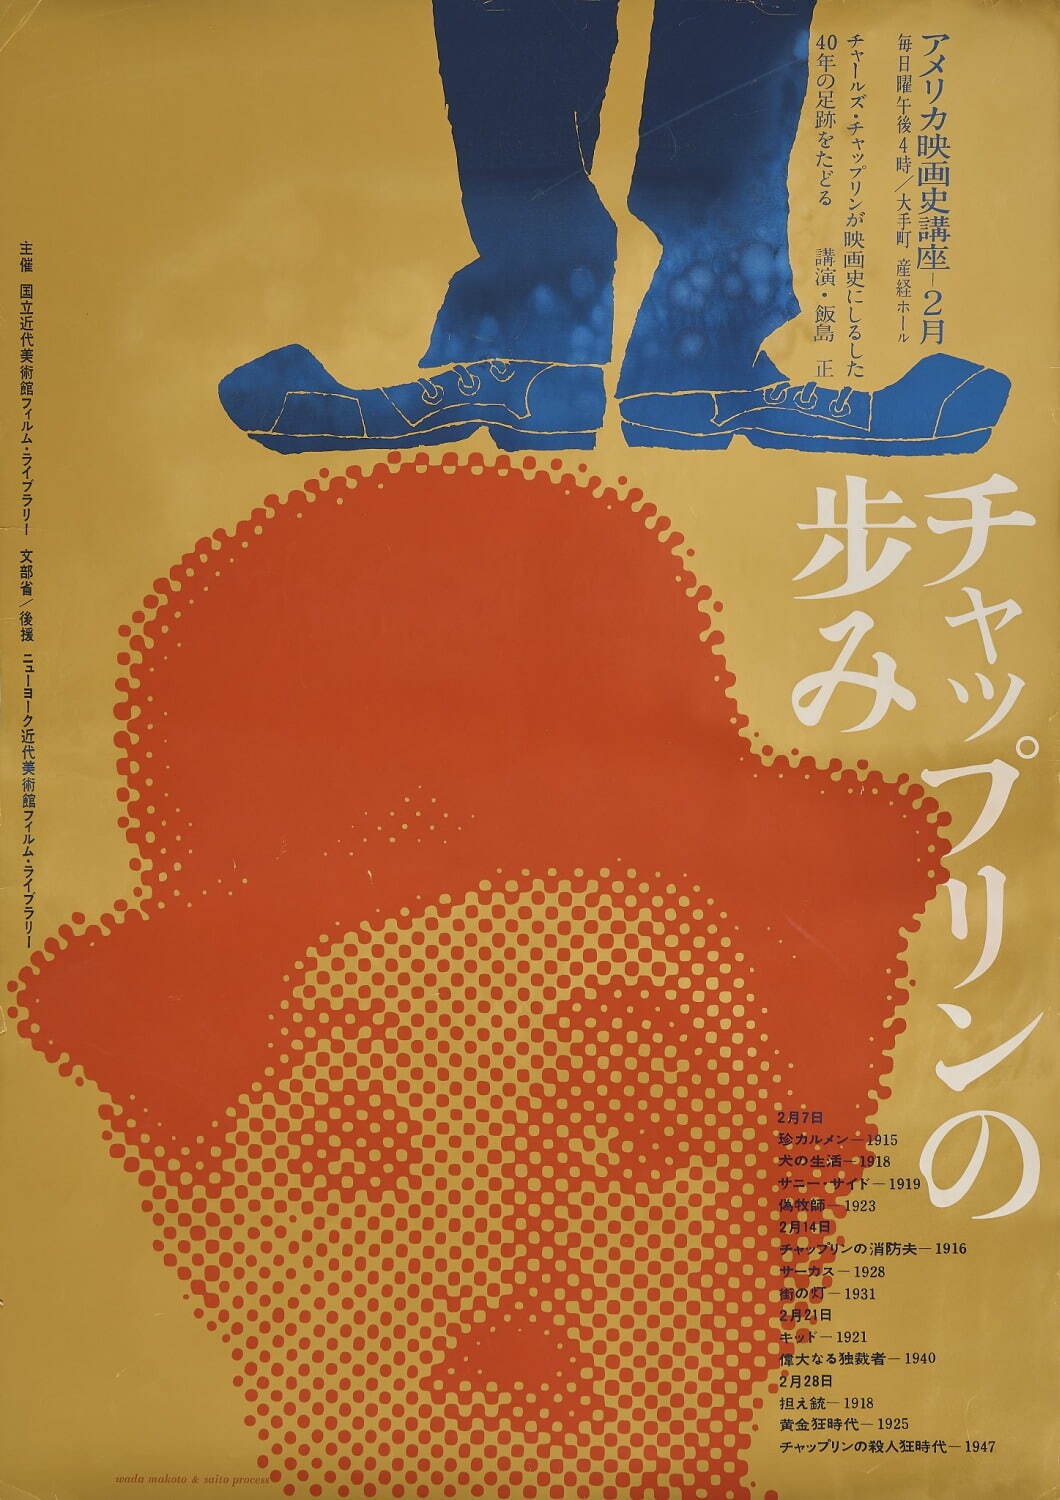 和田誠作「国立近代美術館『アメリカ映画史講座 チャップリンの歩み』」ポスター 1959年 国立映画アーカイブ所蔵